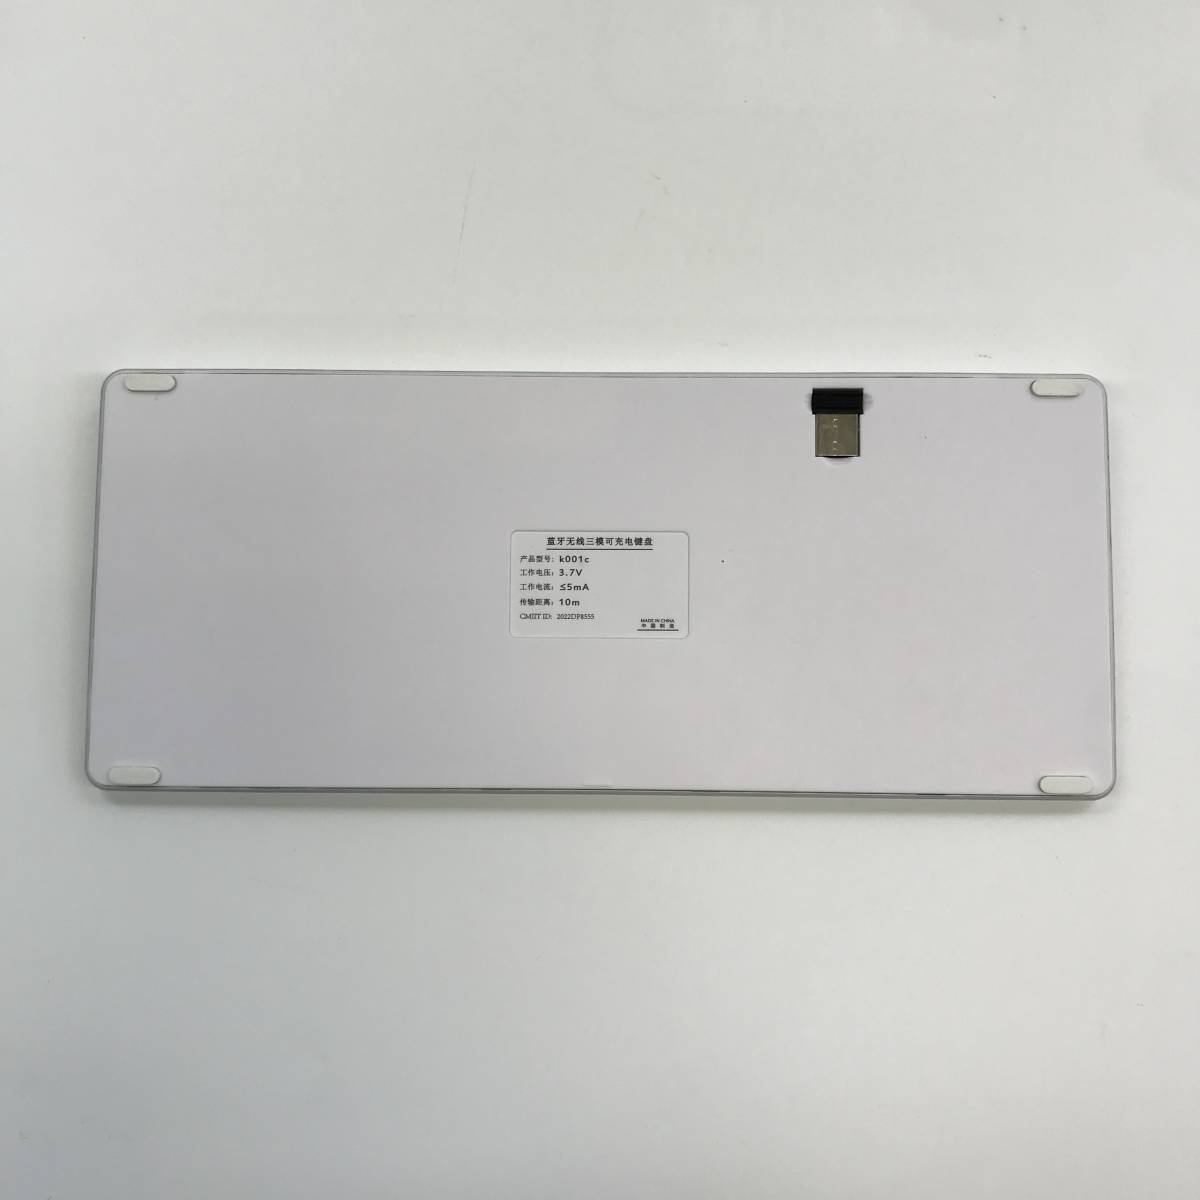 【1円オークション】 RUUNNER Bluetoothワイヤレスキーボード 2.4GHzとBT接続 3台のデバイス接続可能 コンパクト 充電式 薄型 TS01A001683_画像4